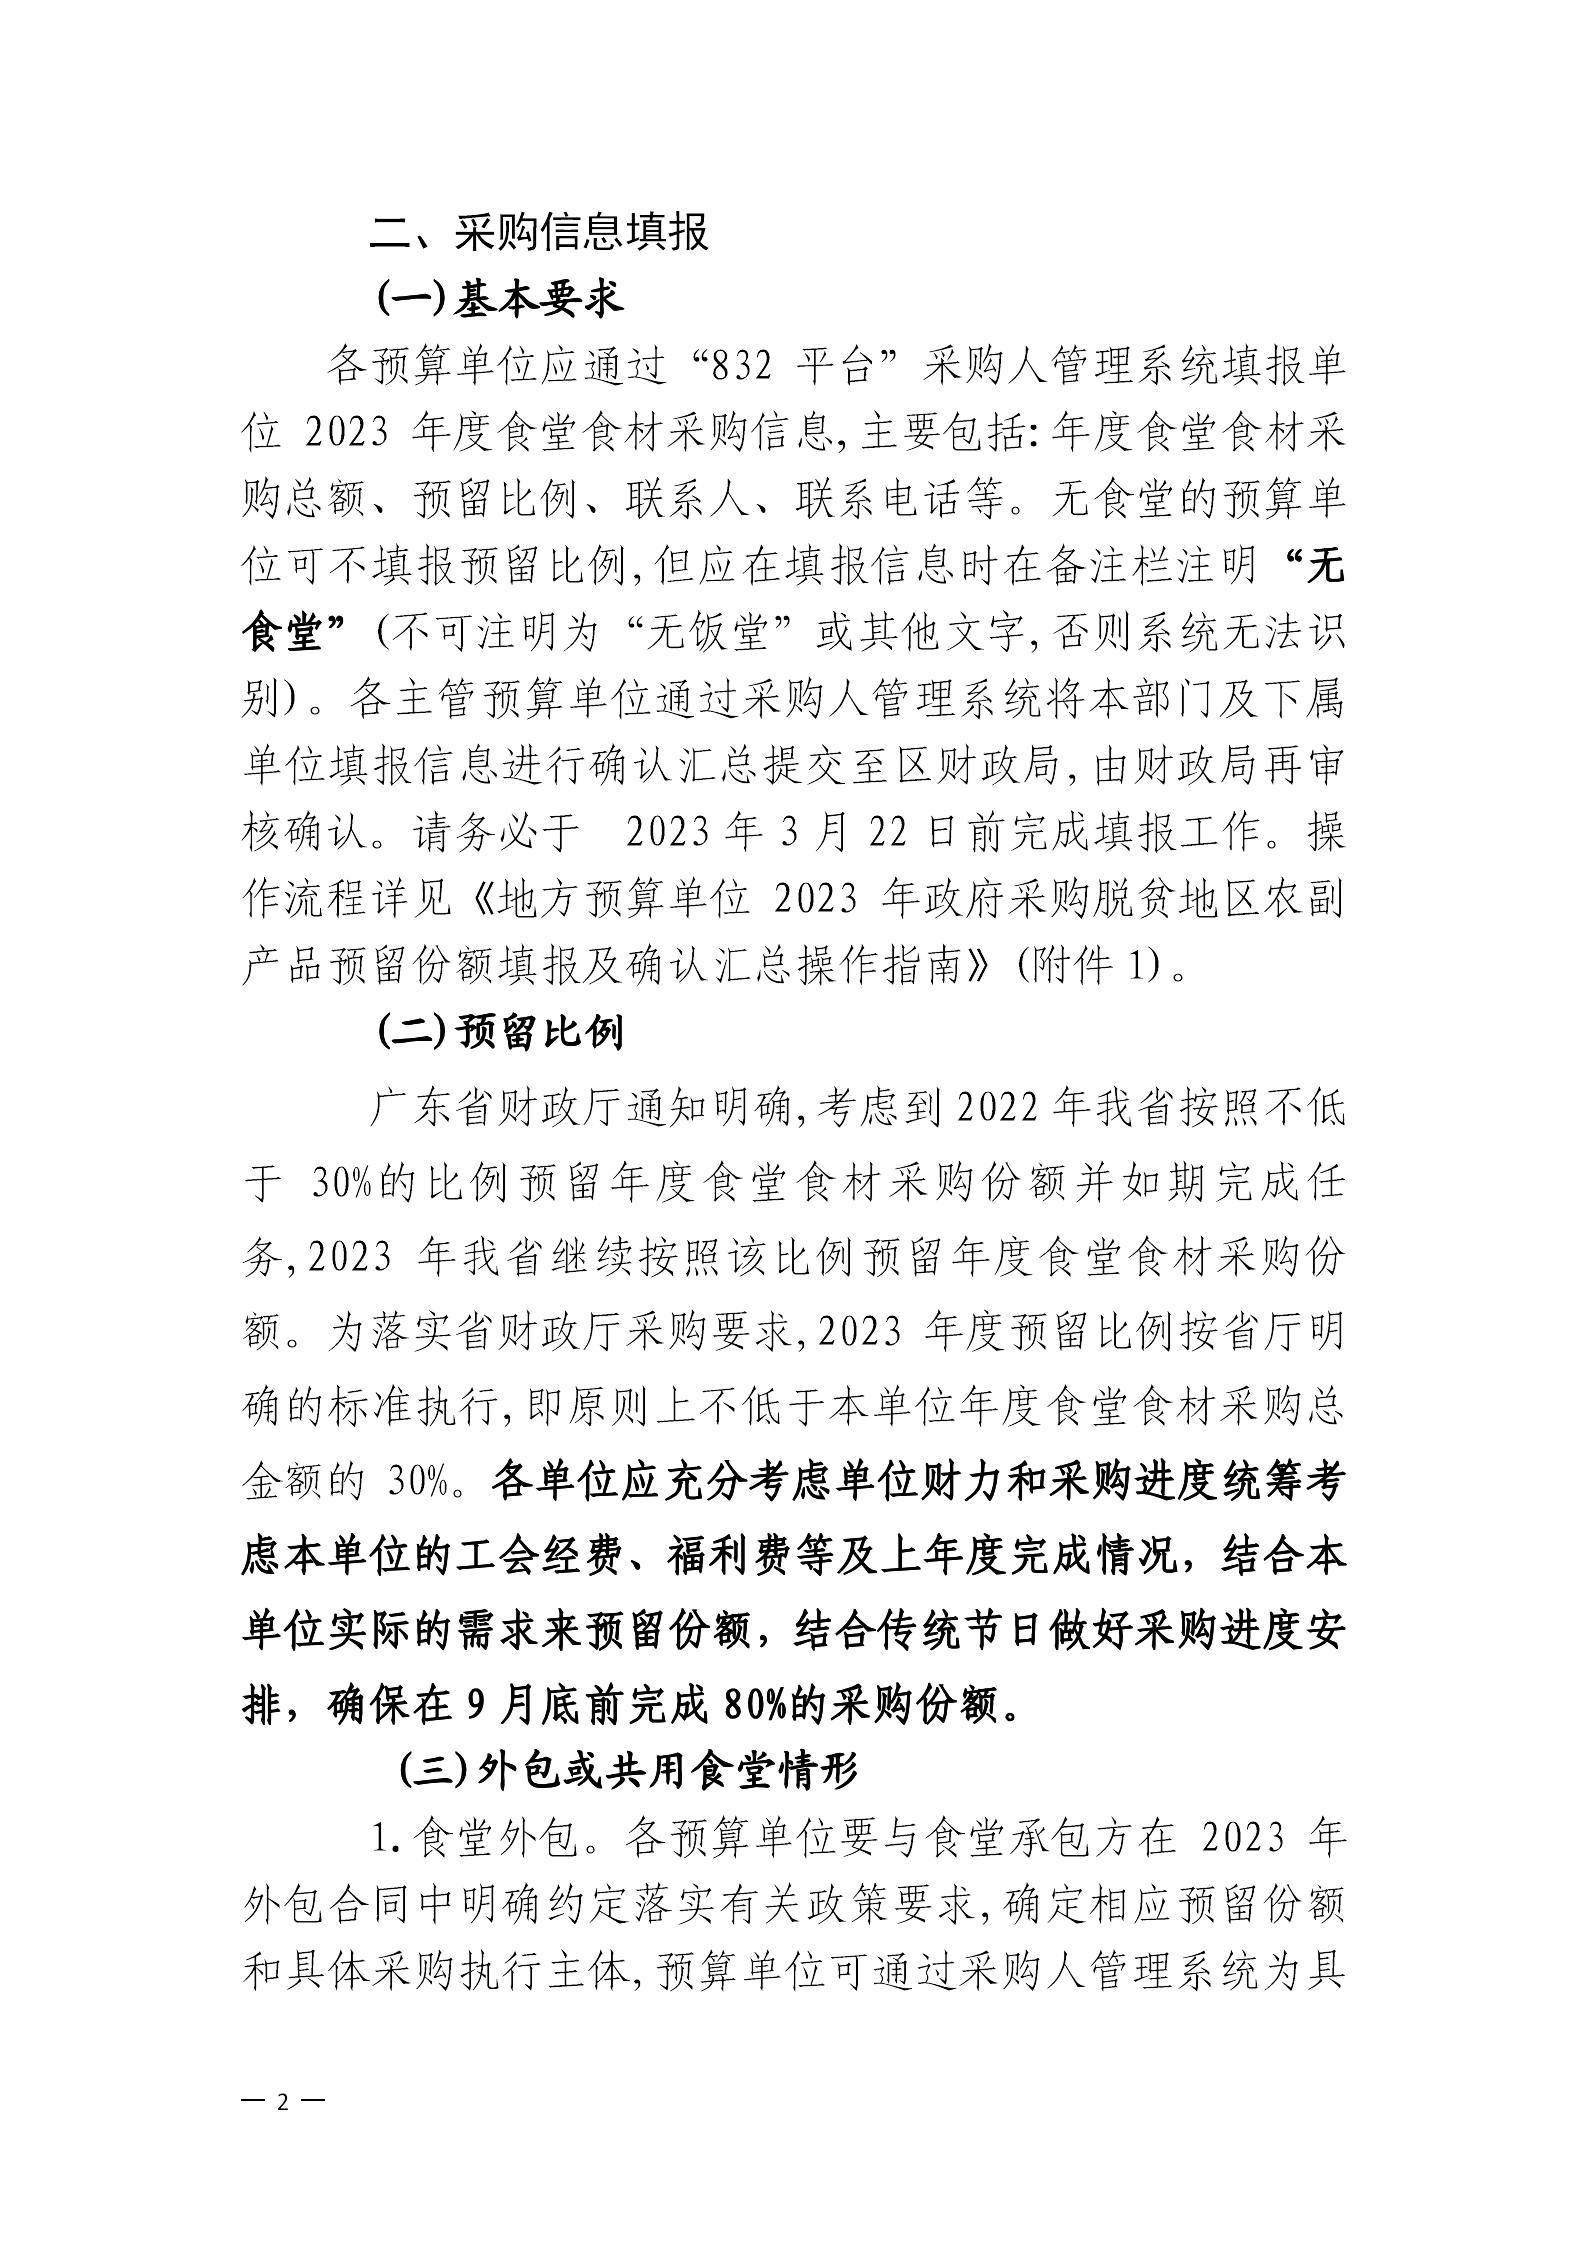 广州市从化区财政局关于落实2023年政府采购脱贫地区农副产品工作的通知_01.jpg